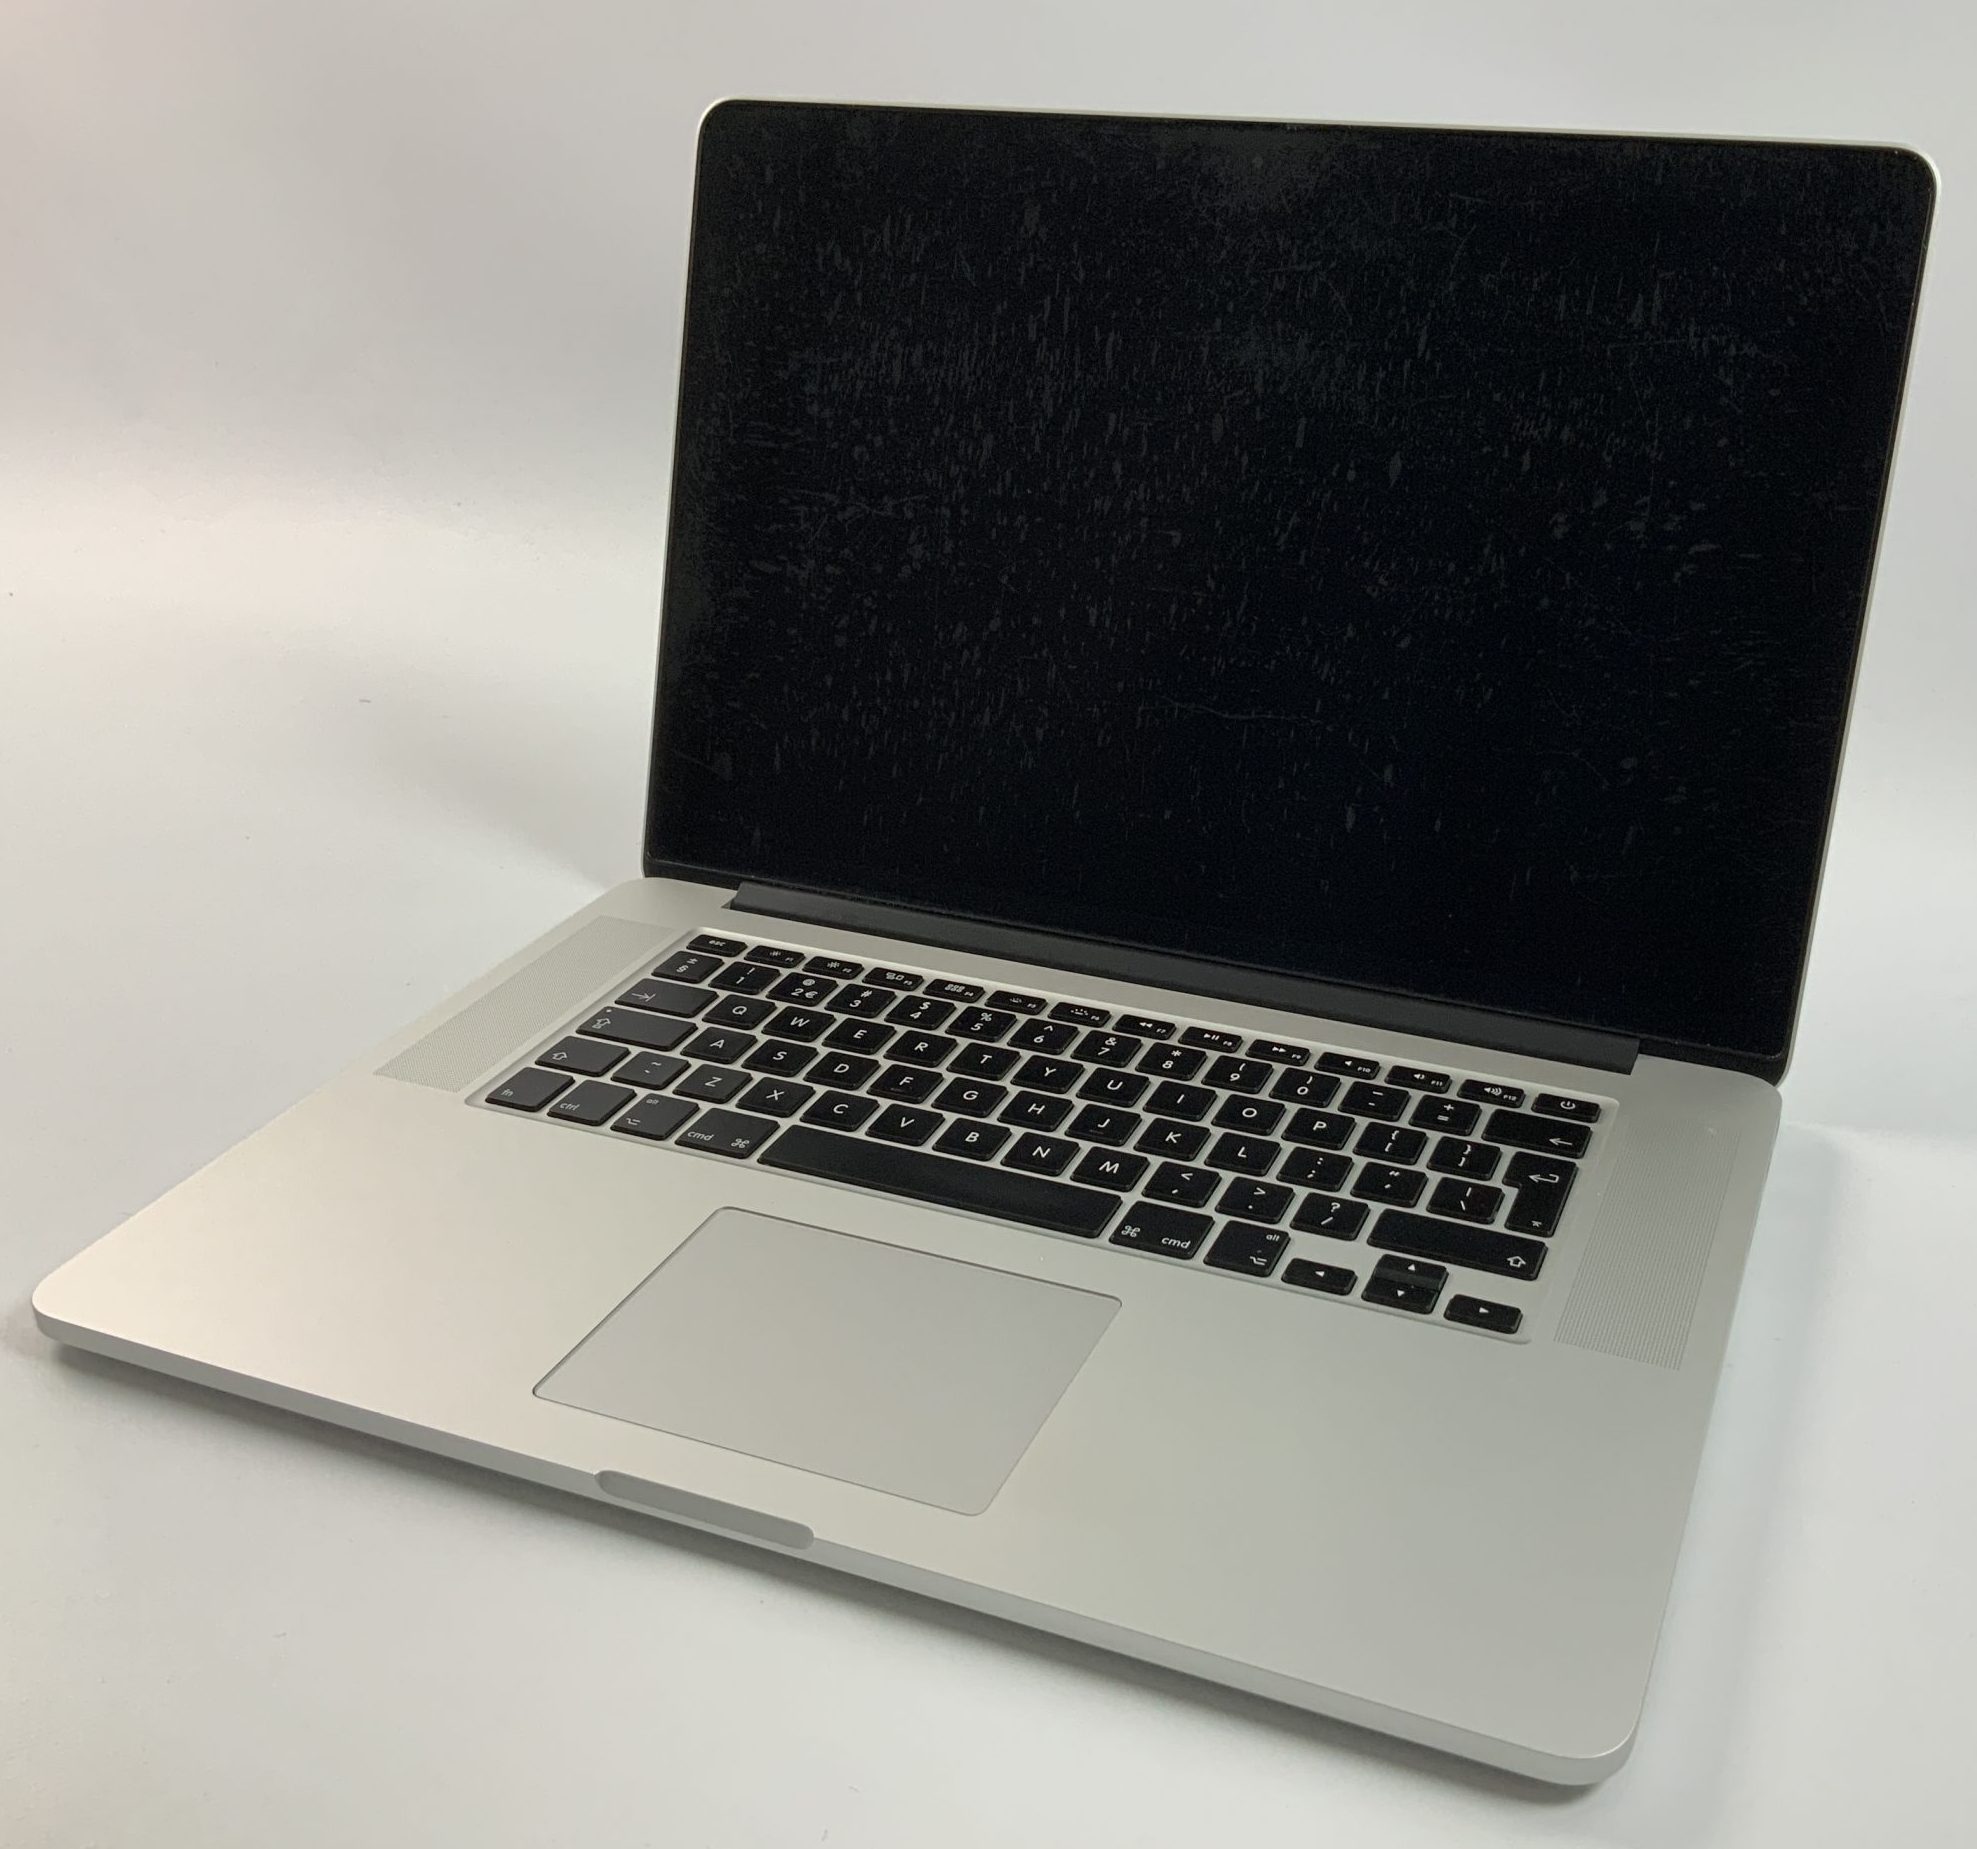 MacBook Pro Retina 15" Mid 2015 (Intel Quad-Core i7 2.2 GHz 16 GB RAM 256 GB SSD), Intel Quad-Core i7 2.2 GHz, 16 GB RAM, 256 GB SSD, imagen 1